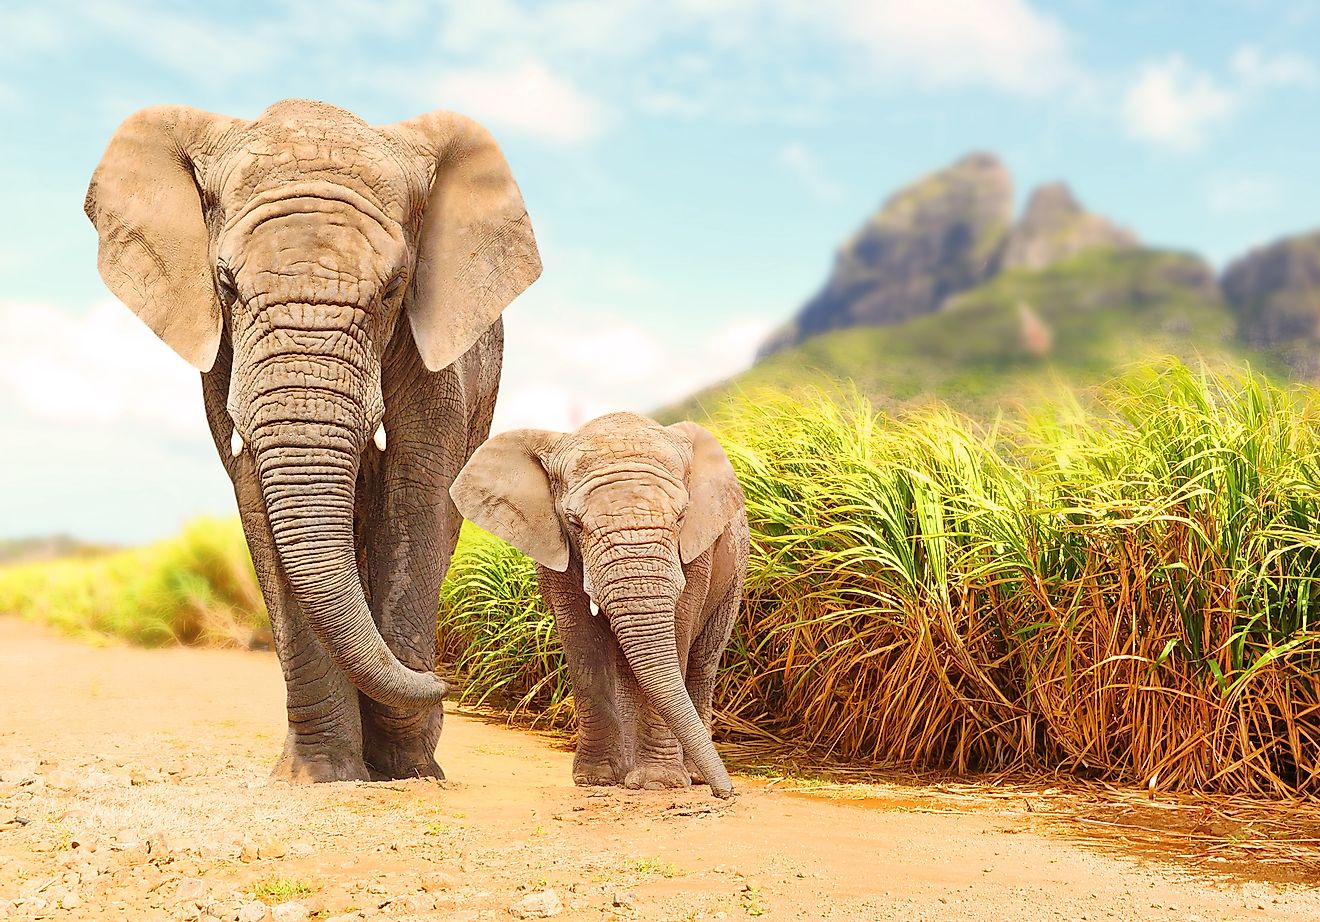 Nors drambliai jau seniai buvo gaudomi ir dresuojami Azijoje, mes jų dar nelaikome prijaukintais.